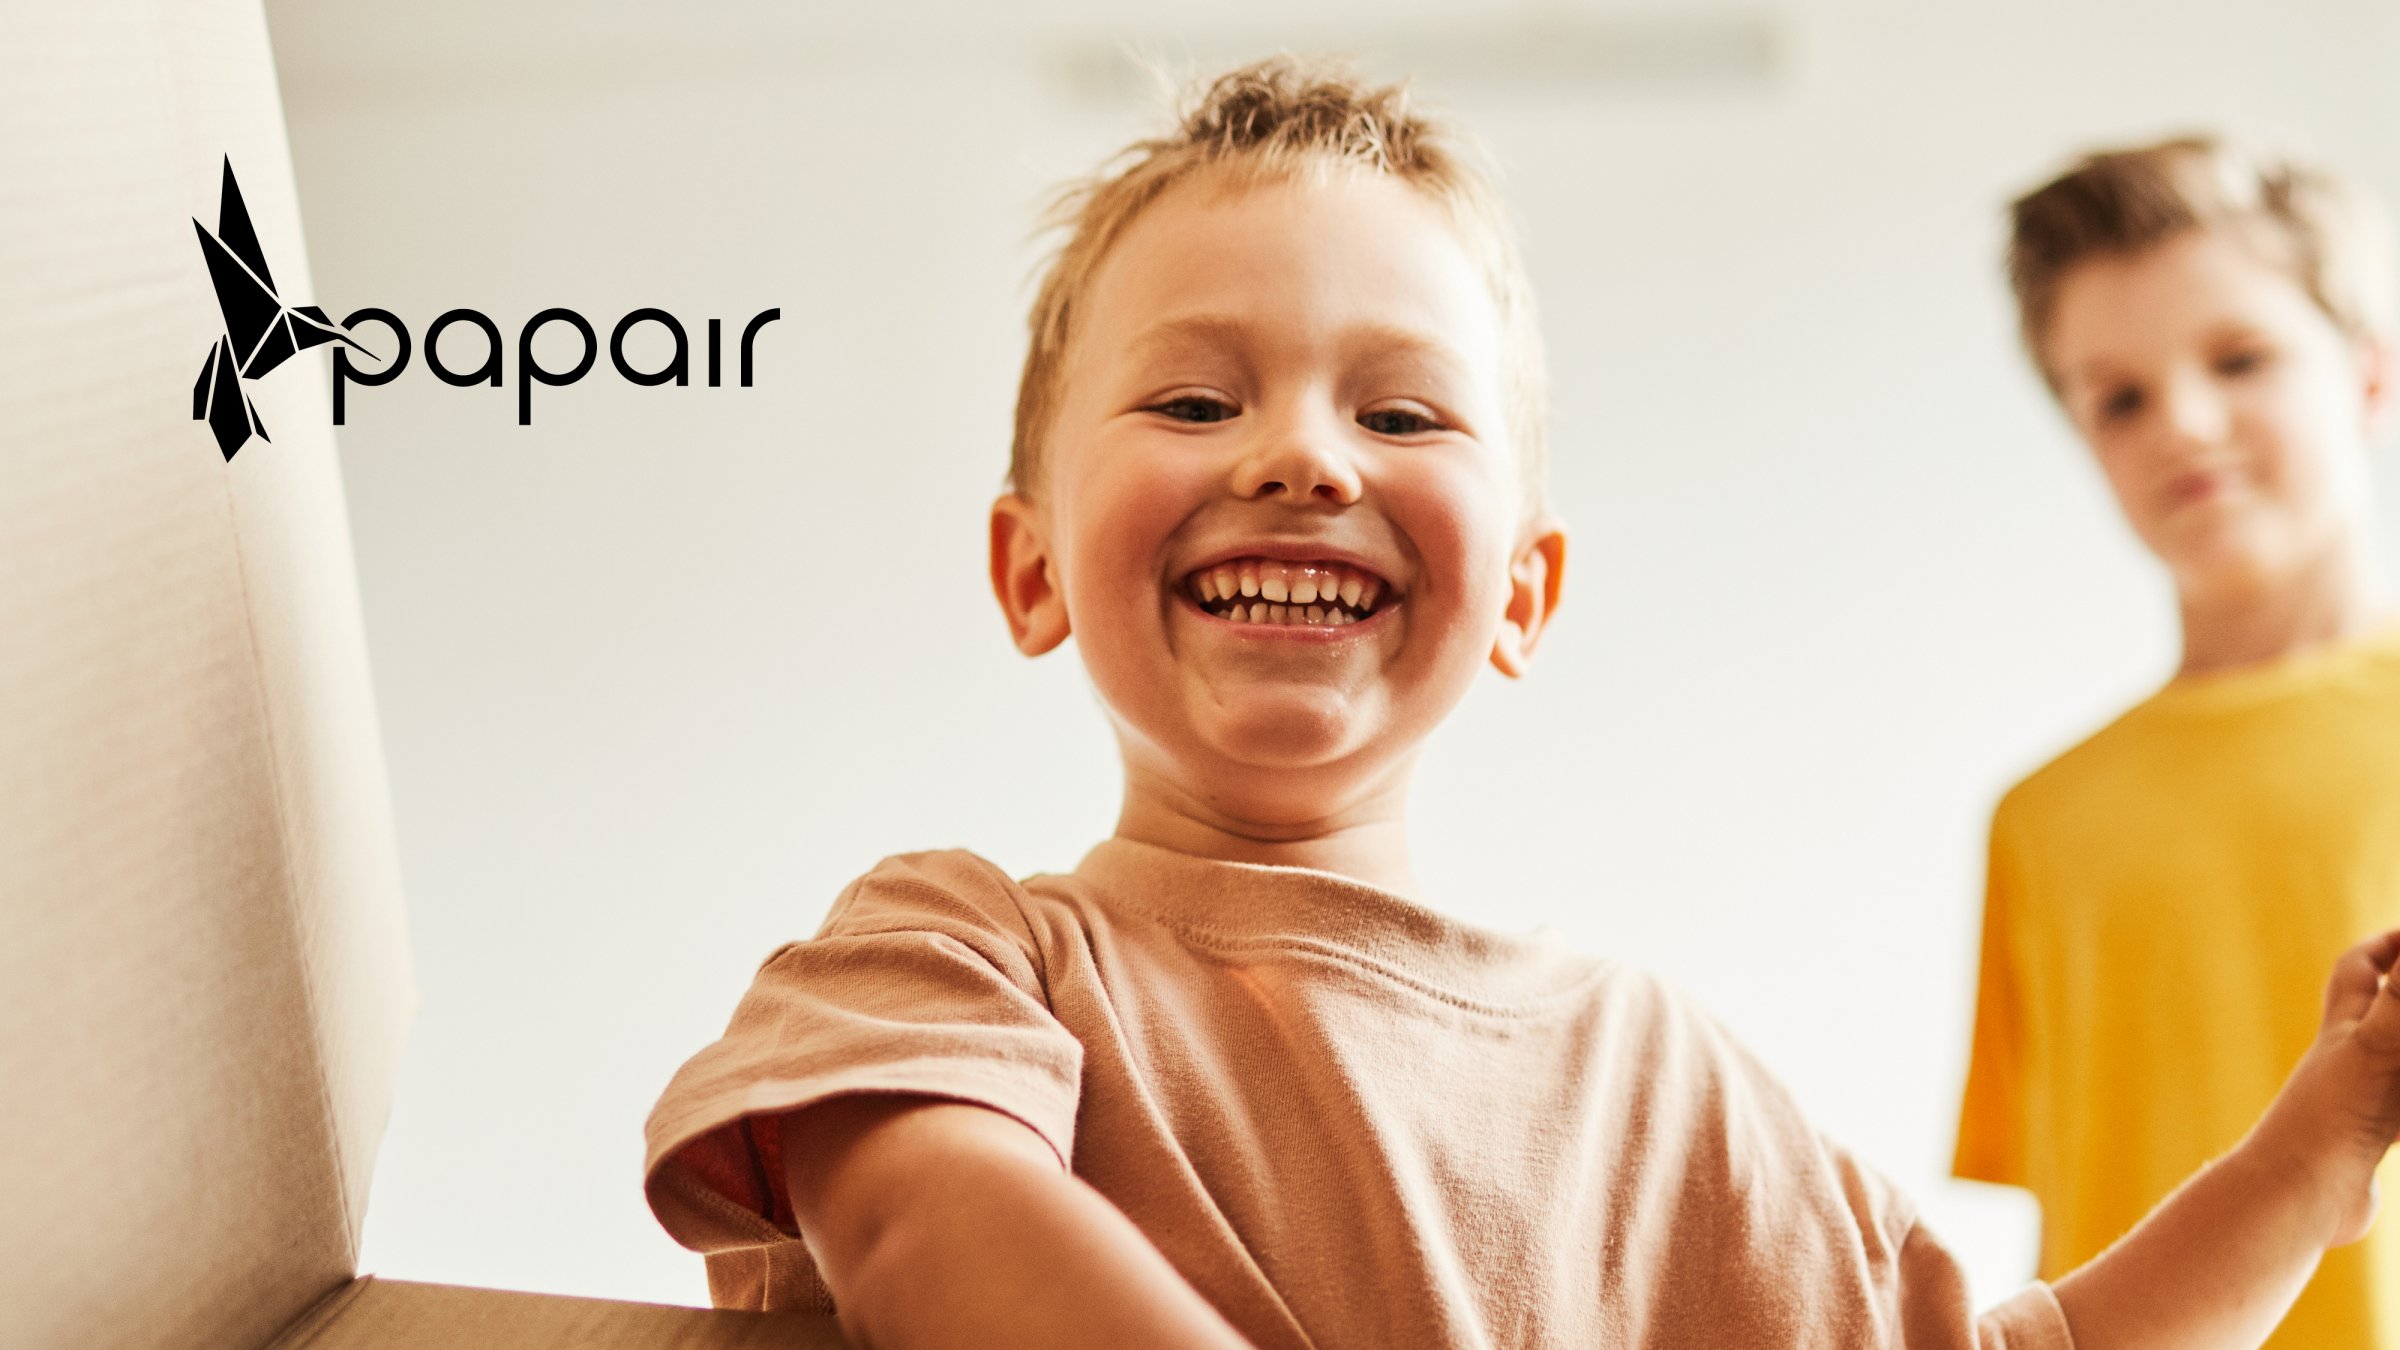 das Markenlogo der Marke Papair auf einem Bild von einem kleinen Jungen, der in einen Karton schaut